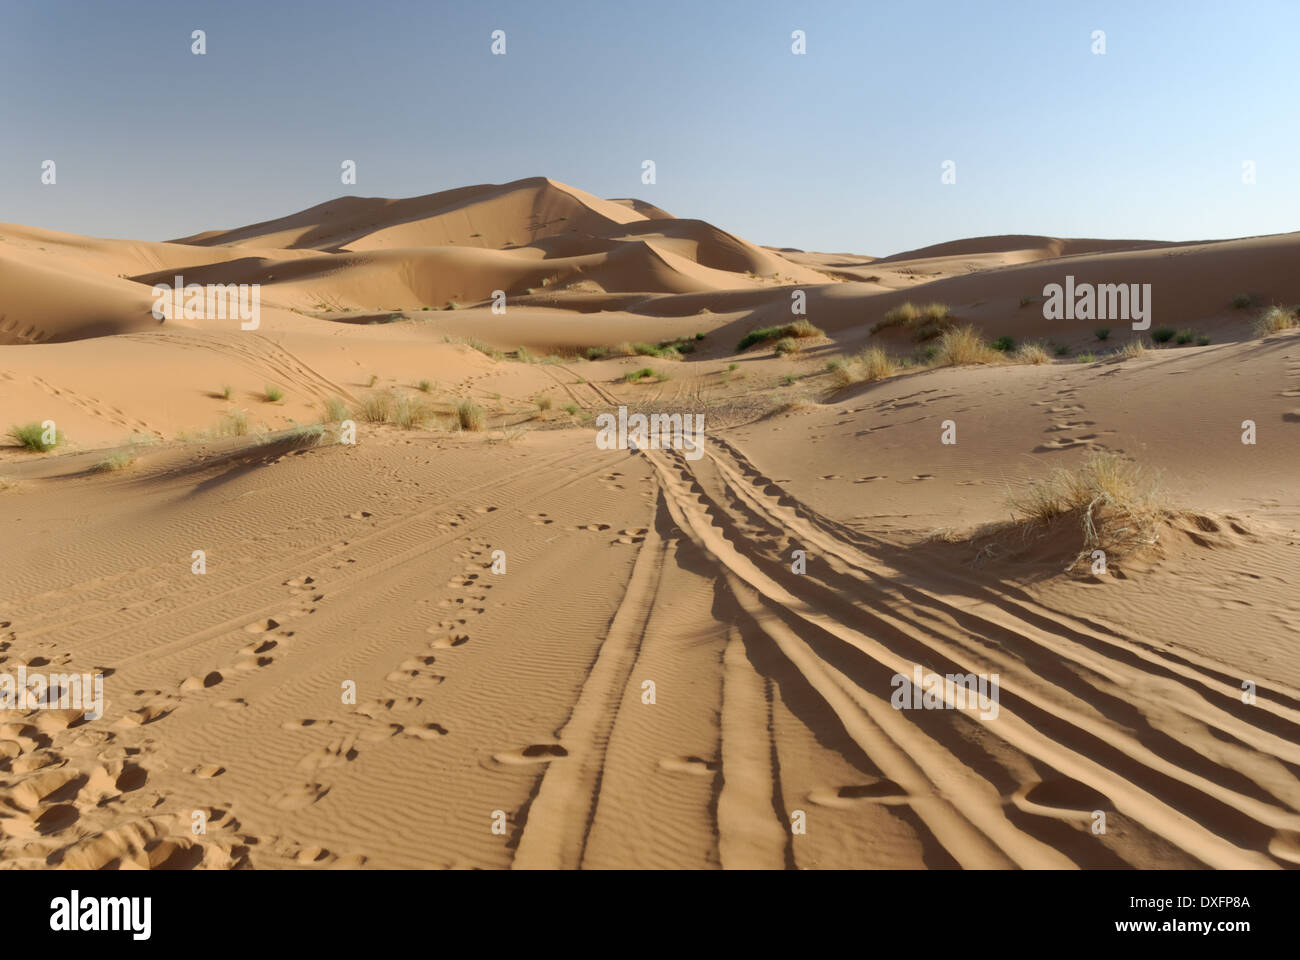 Tracks in the sand, desert in Morocco. Stock Photo